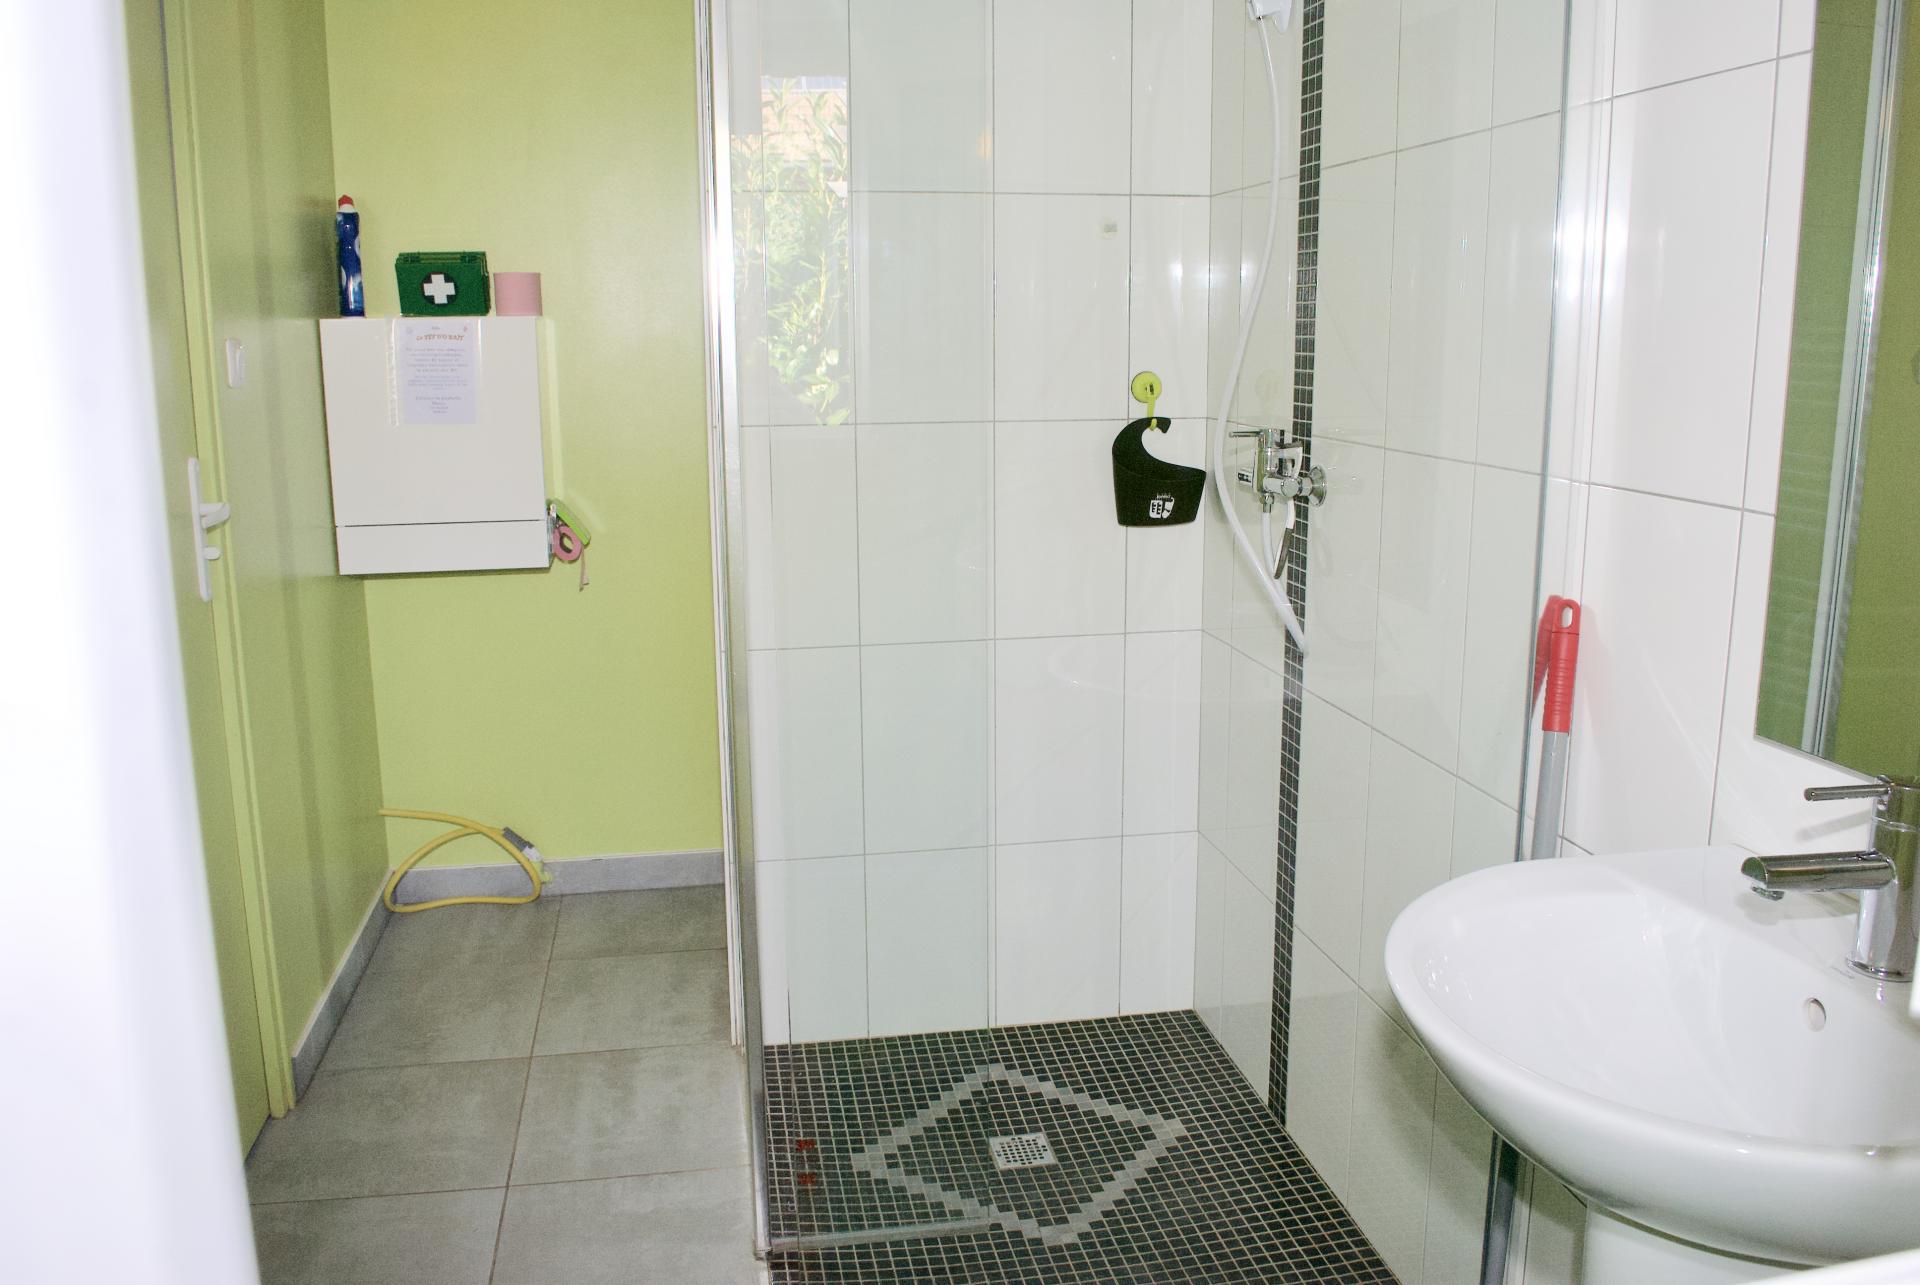 Salle de douche dans SPA